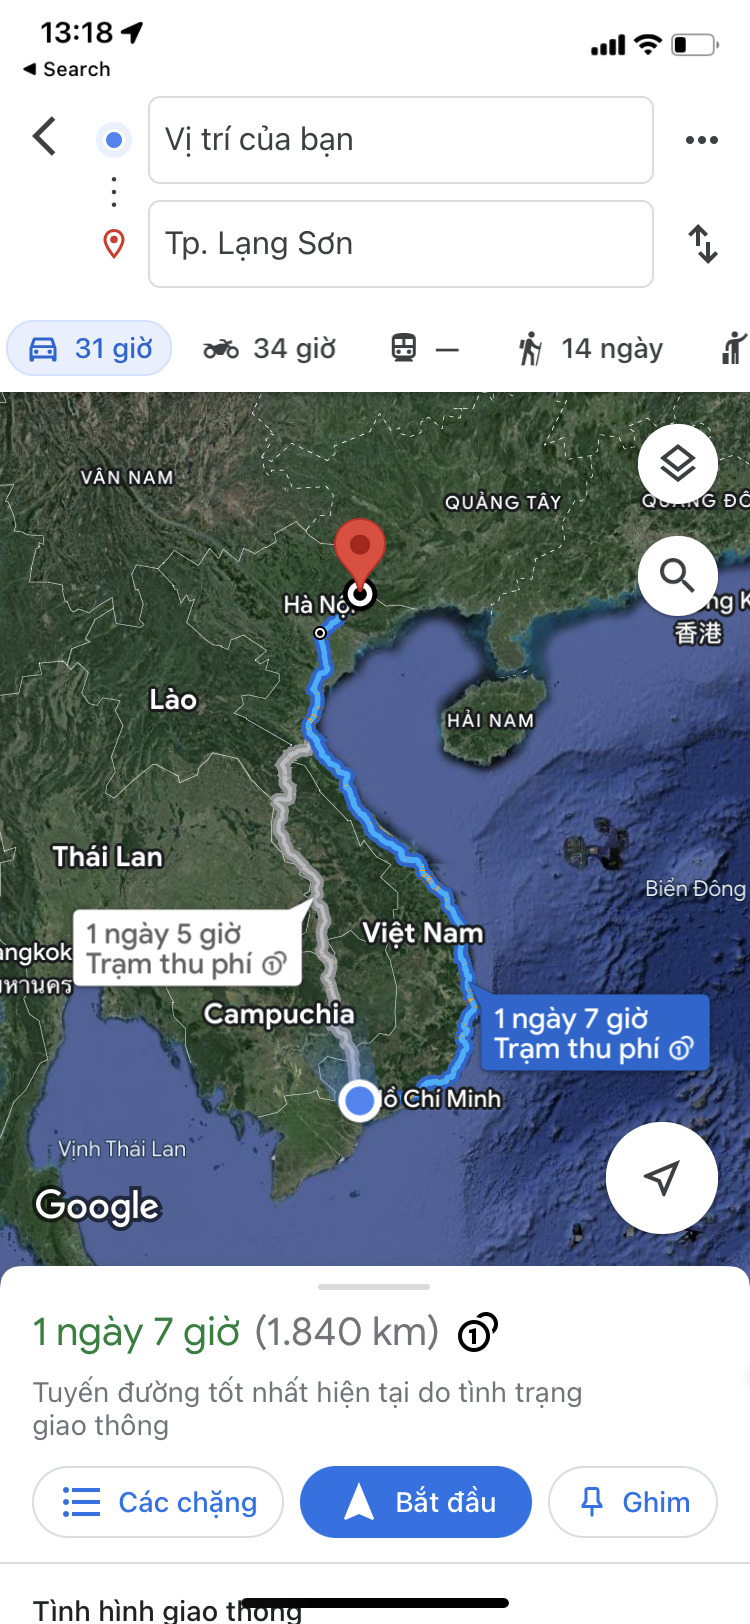 2 vợ chồng cùng 3 con nhỏ Xuyên Việt 5.000 km trong 12 ngày: Niềm đam mê bất tận :)